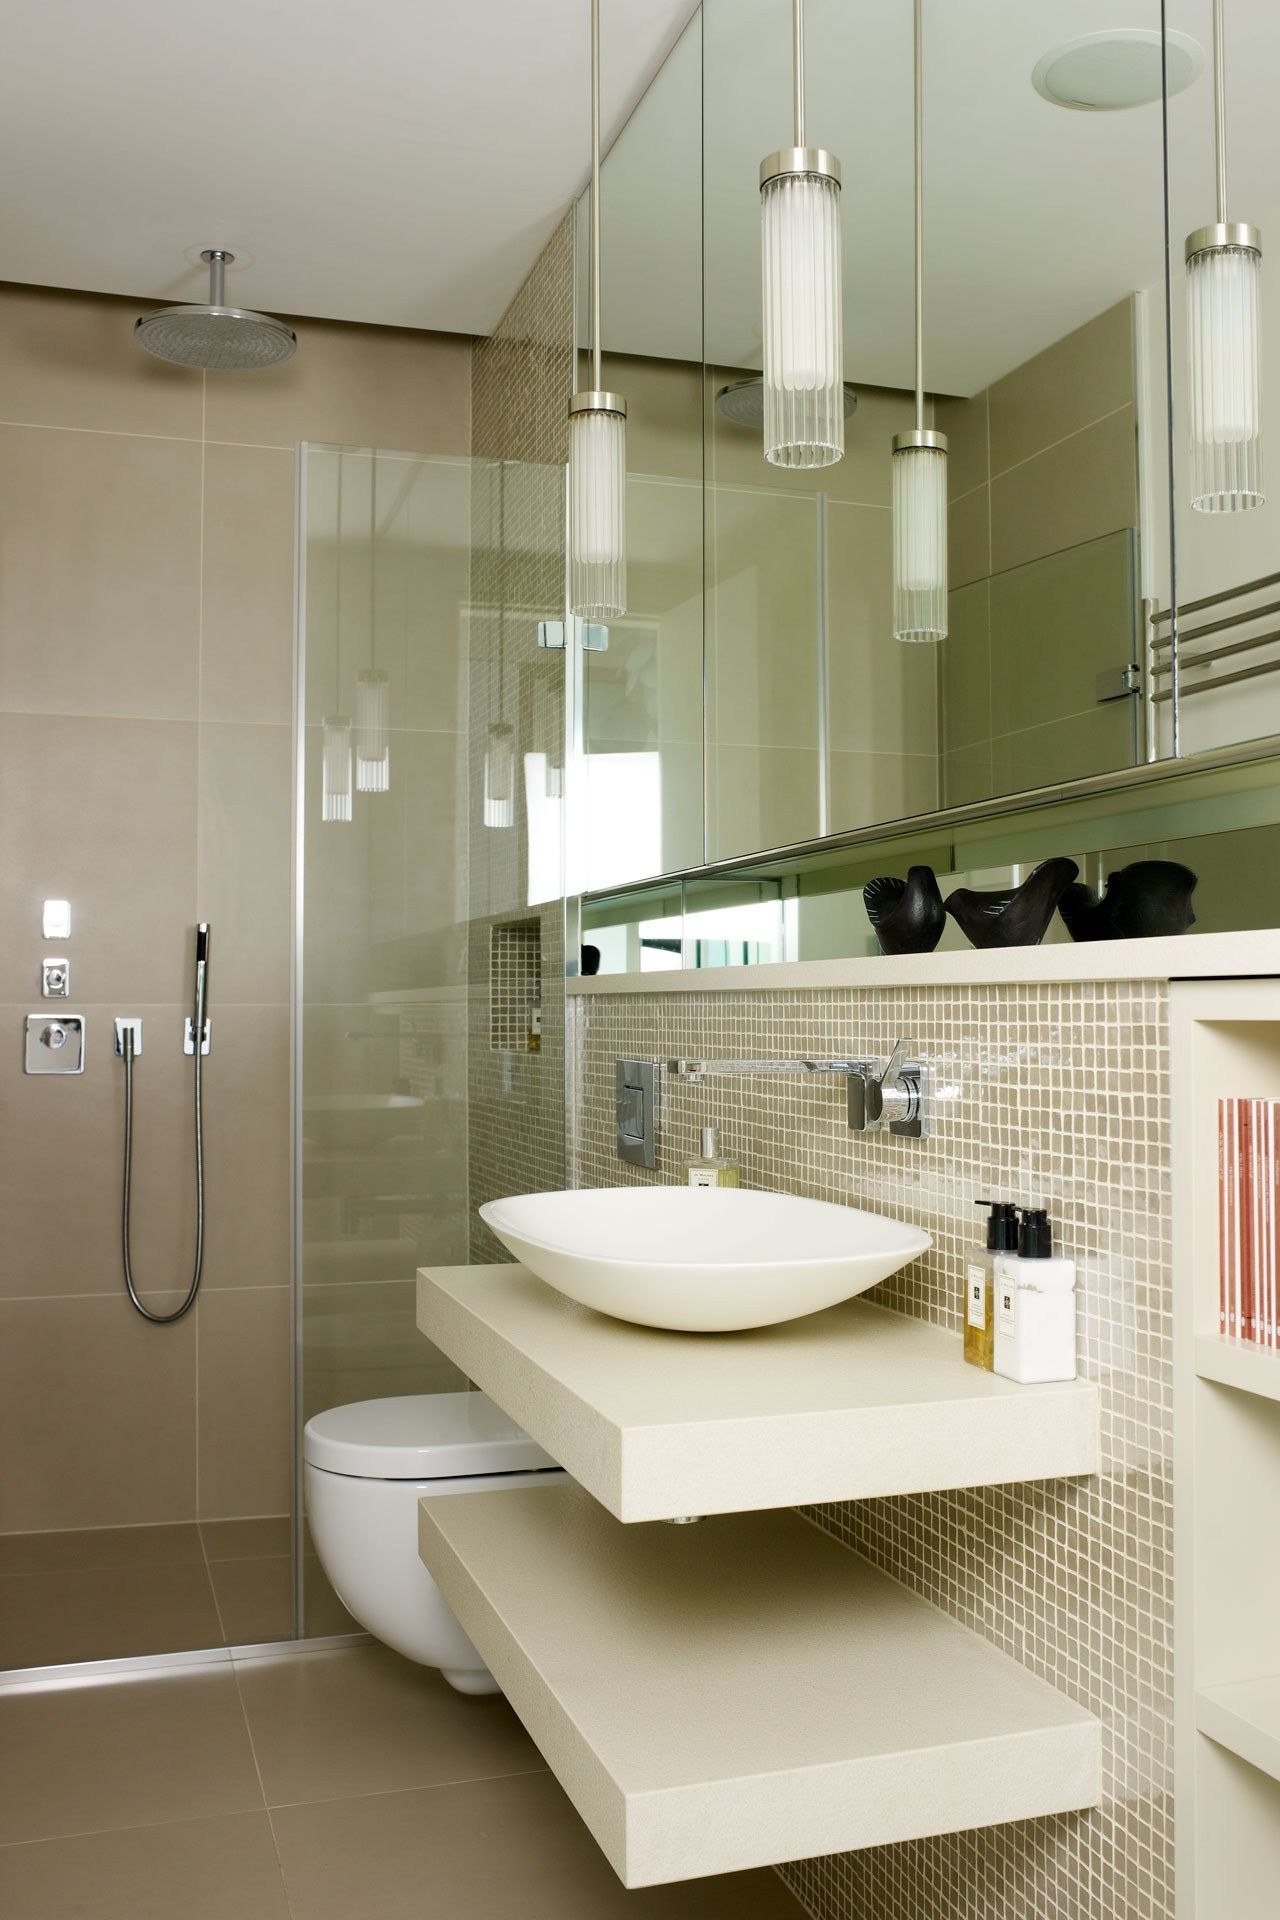 Ванная комната дизайн мал размер. Ванная комната. Компактная ванная комната. Современная ванная комната. Дизайнерские решения для ванной комнаты.